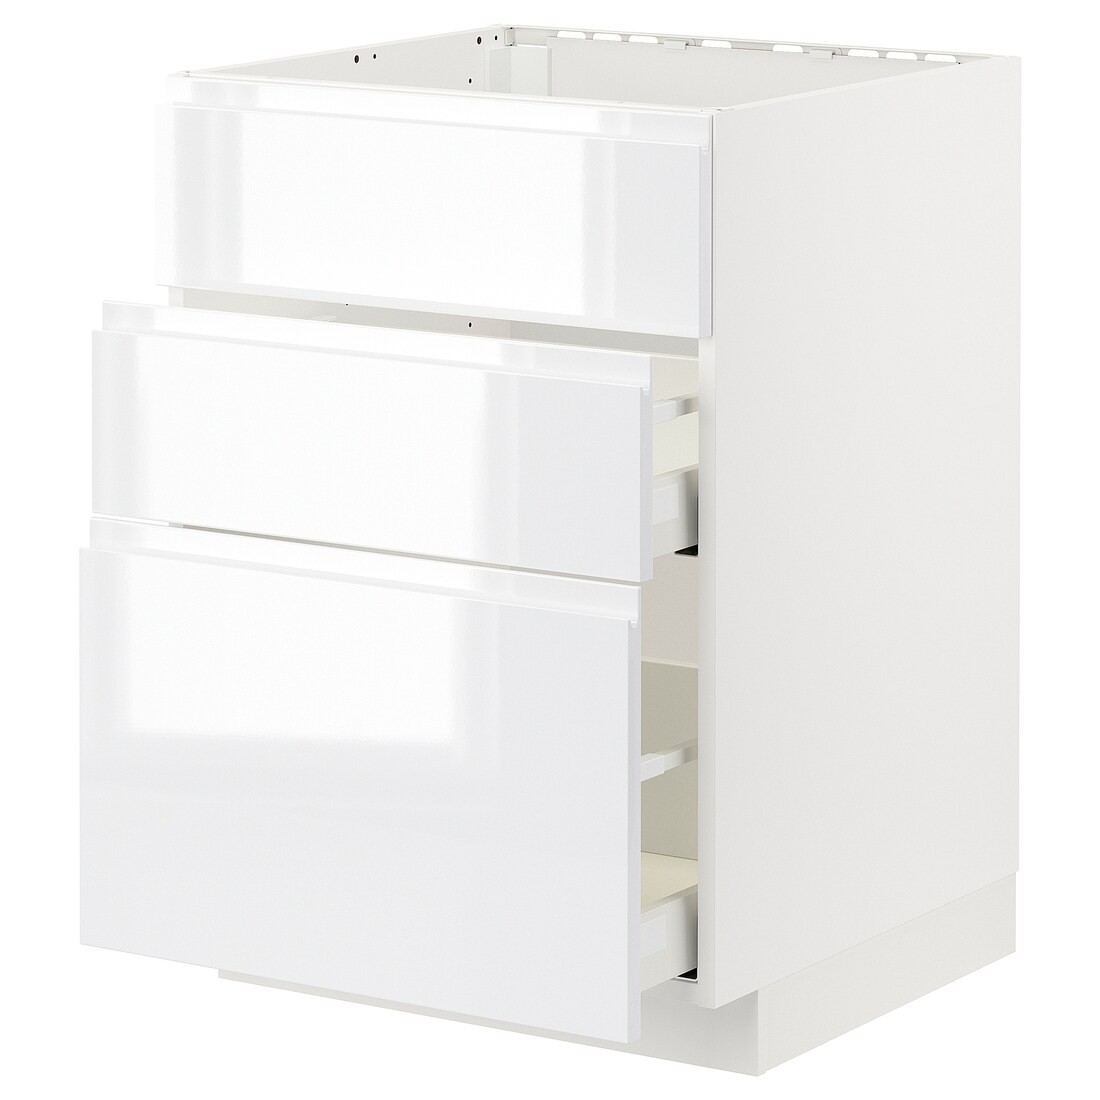 METOD МЕТОД / MAXIMERA МАКСИМЕРА Напольный шкаф для варочной панели / вытяжка с ящиком, белый / Voxtorp глянцевый / белый, 60x60 см